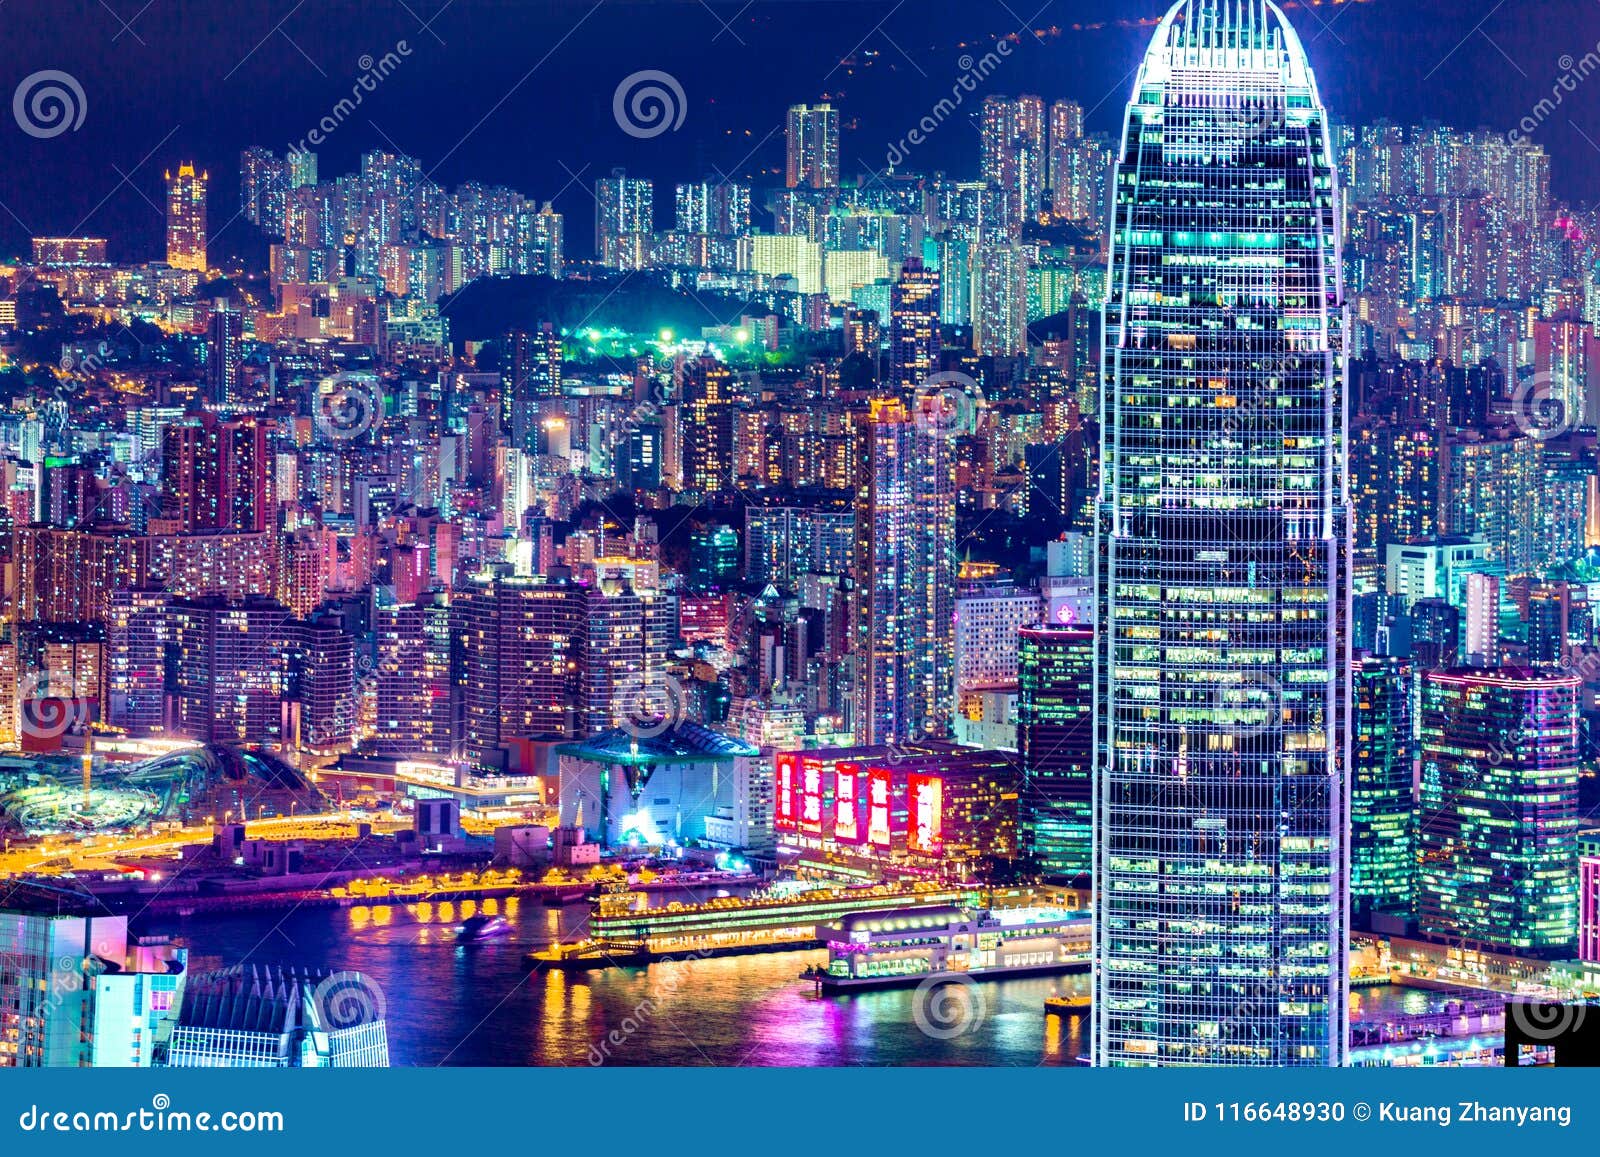 Lights Of Hong Kong City At Night Editorial Image Image Of Peak Lights 116648930